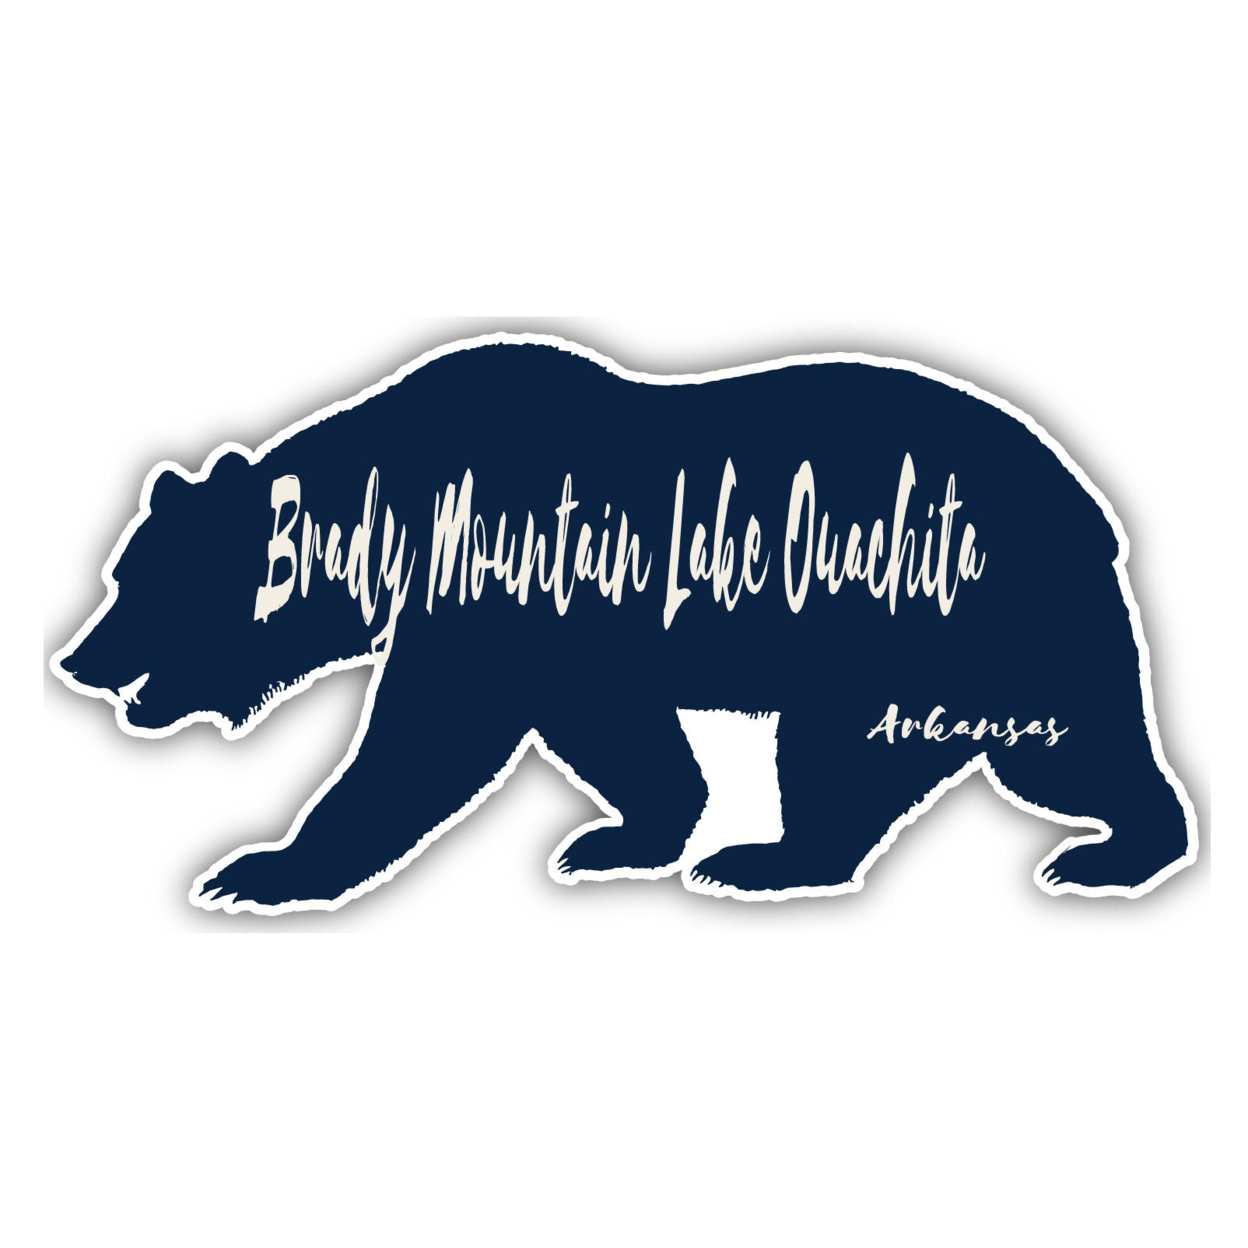 Brady Mountain Lake Ouachita Arkansas Souvenir Decorative Stickers (Choose Theme And Size) - 4-Pack, 4-Inch, Bear